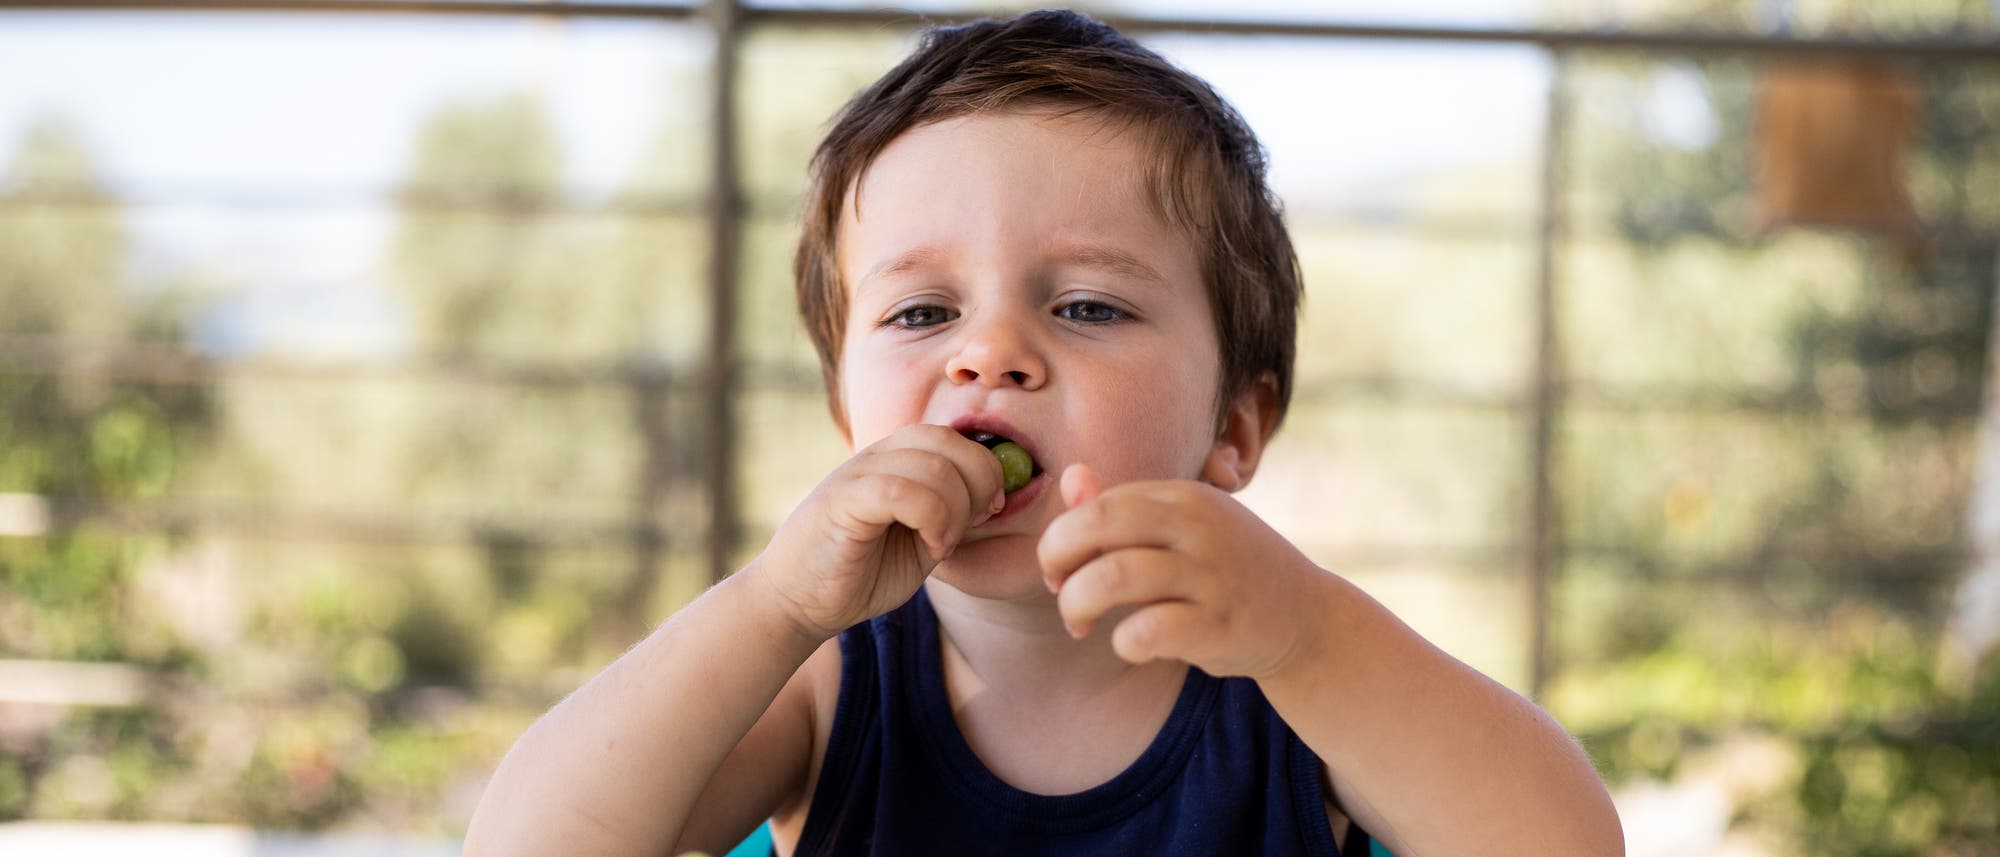 Ein kleiner Junge sitzt vor einem Teller mit Weintrauben und steckt sich eine Traube in den Mund. 